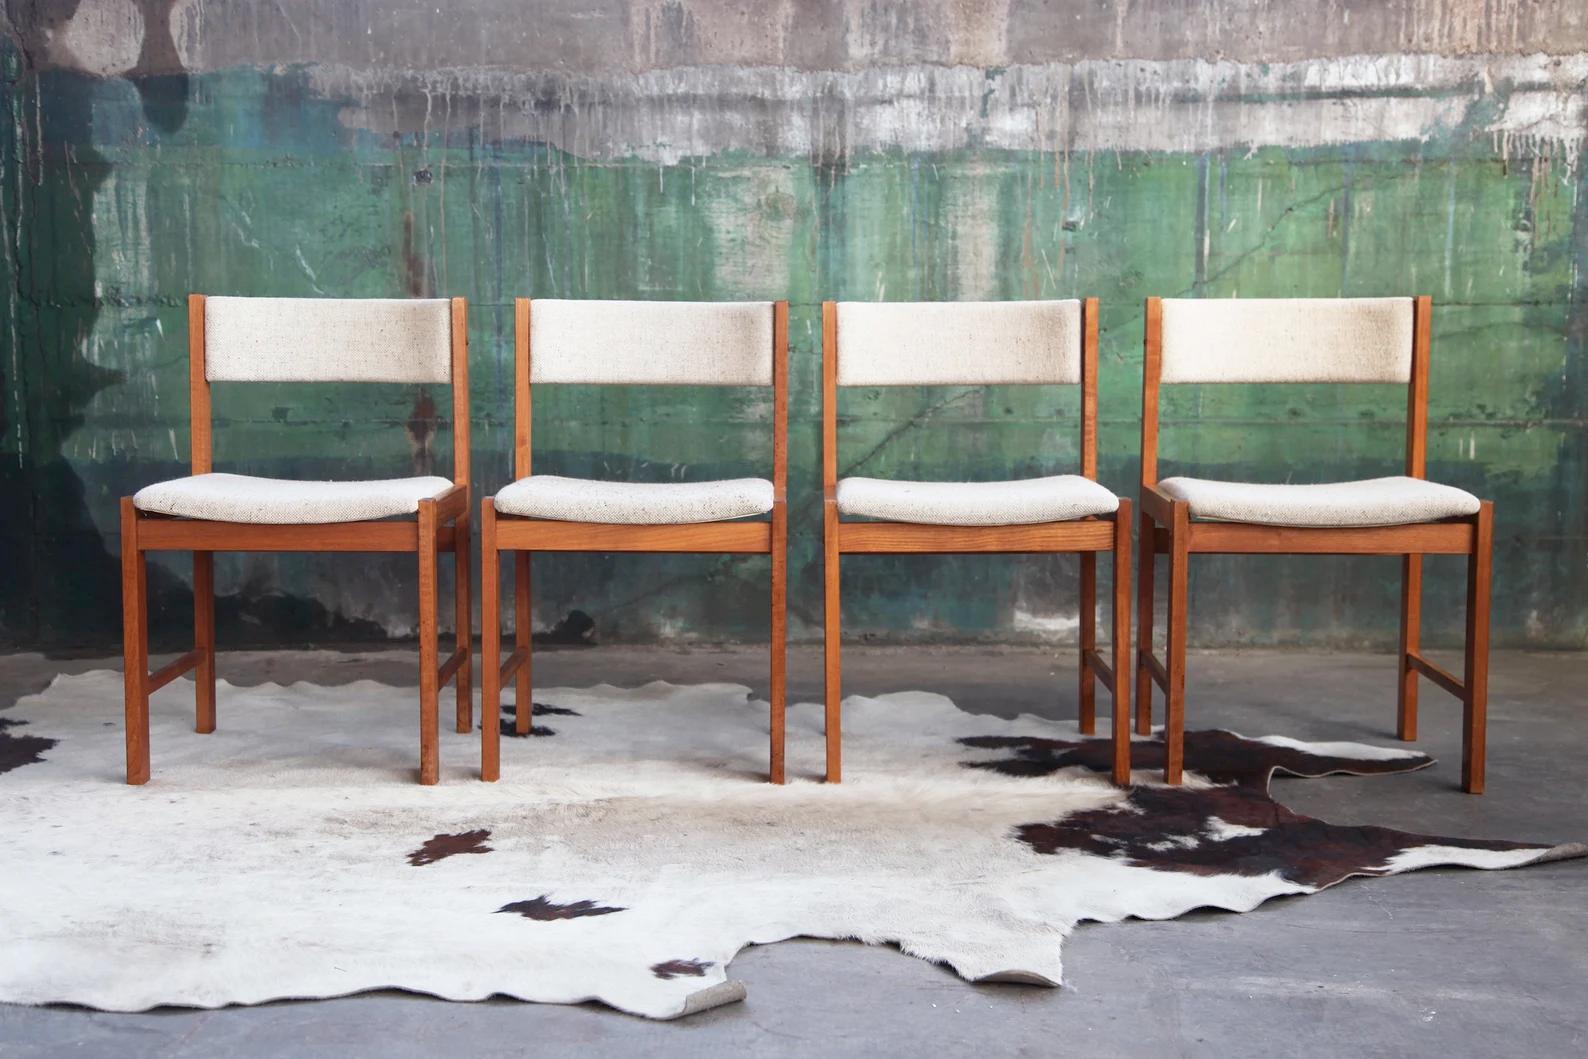 Voici une occasion rare d'acheter un ensemble de quatre chaises danoises en teck massif, belles, classiques, robustes et de belle facture. Il s'agit de chaises de salle à manger en teck du milieu du siècle par DScan, très élégantes et à